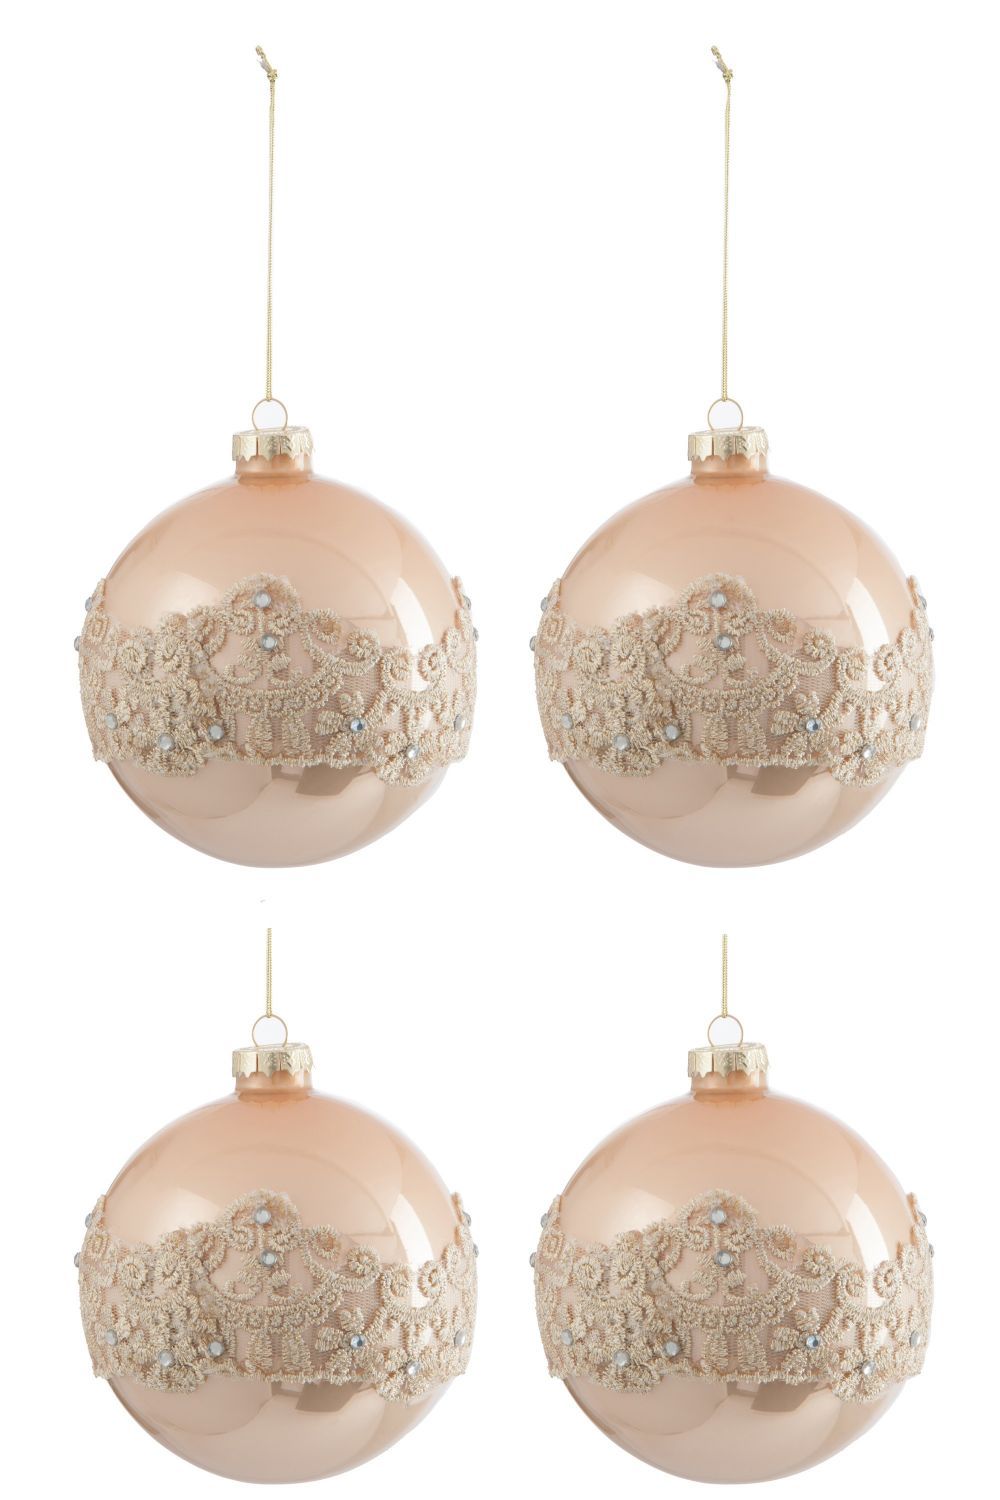 Sada béžovo zlatých vánočních koulí s krajkou L (4ks) - 10*10*10 cm J-Line by Jolipa - LaHome - vintage dekorace